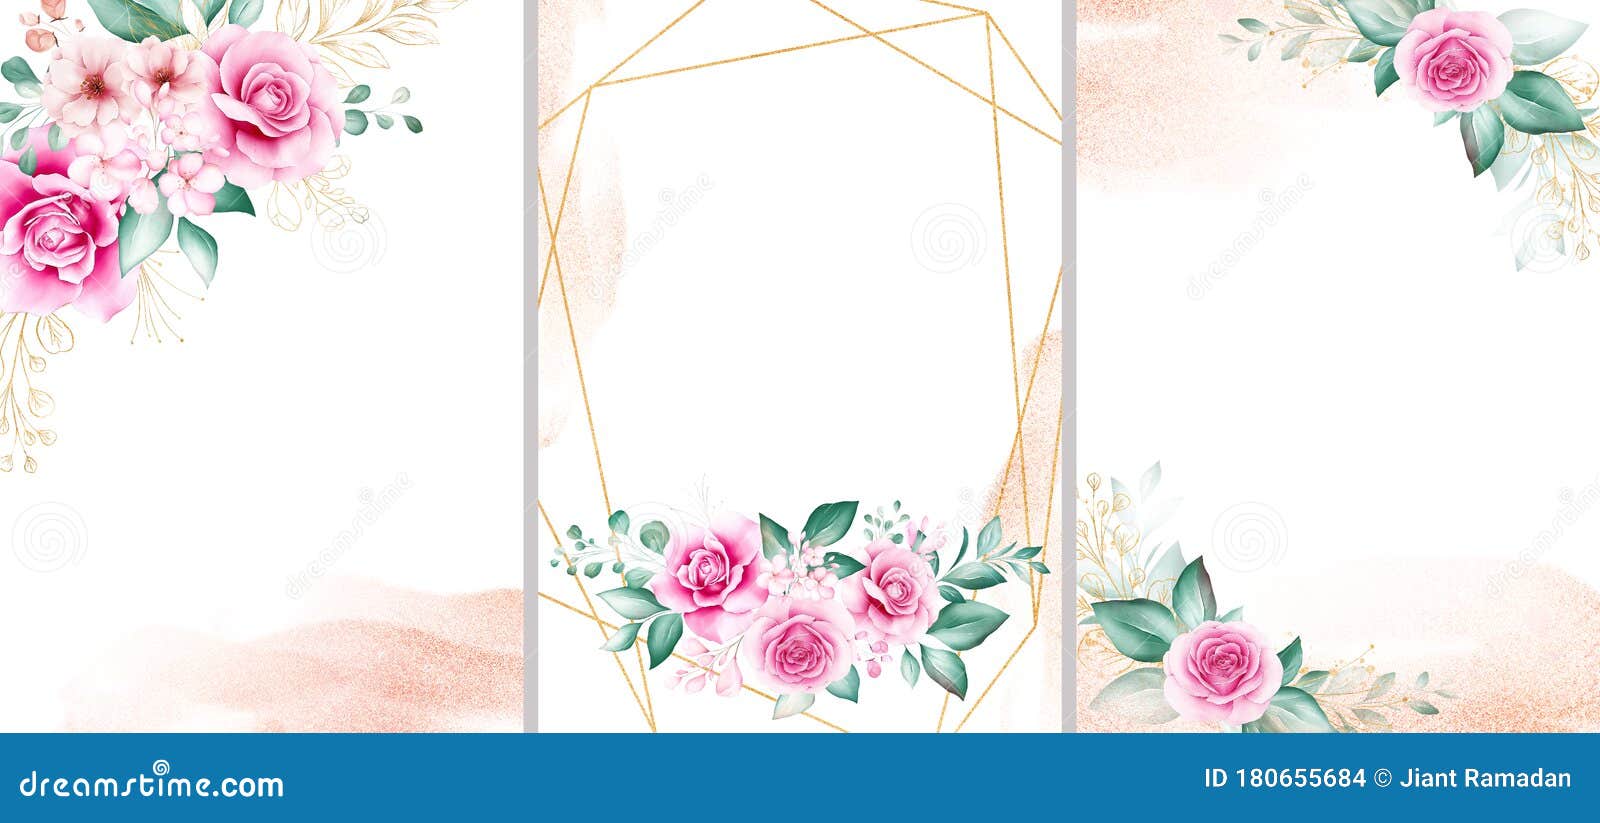 Bộ mẫu thiệp cưới sang trọng với nền nước sơn vàng sẽ mang đến cho bạn những cảm xúc đầy cảm hứng. Với loạt thiệp này, bạn sẽ tìm thấy vẻ đẹp và quý phái với nền nước sơn vàng được trang trí bằng những họa tiết hoa lá tinh xảo, phù hợp với các đám cưới sang trọng.